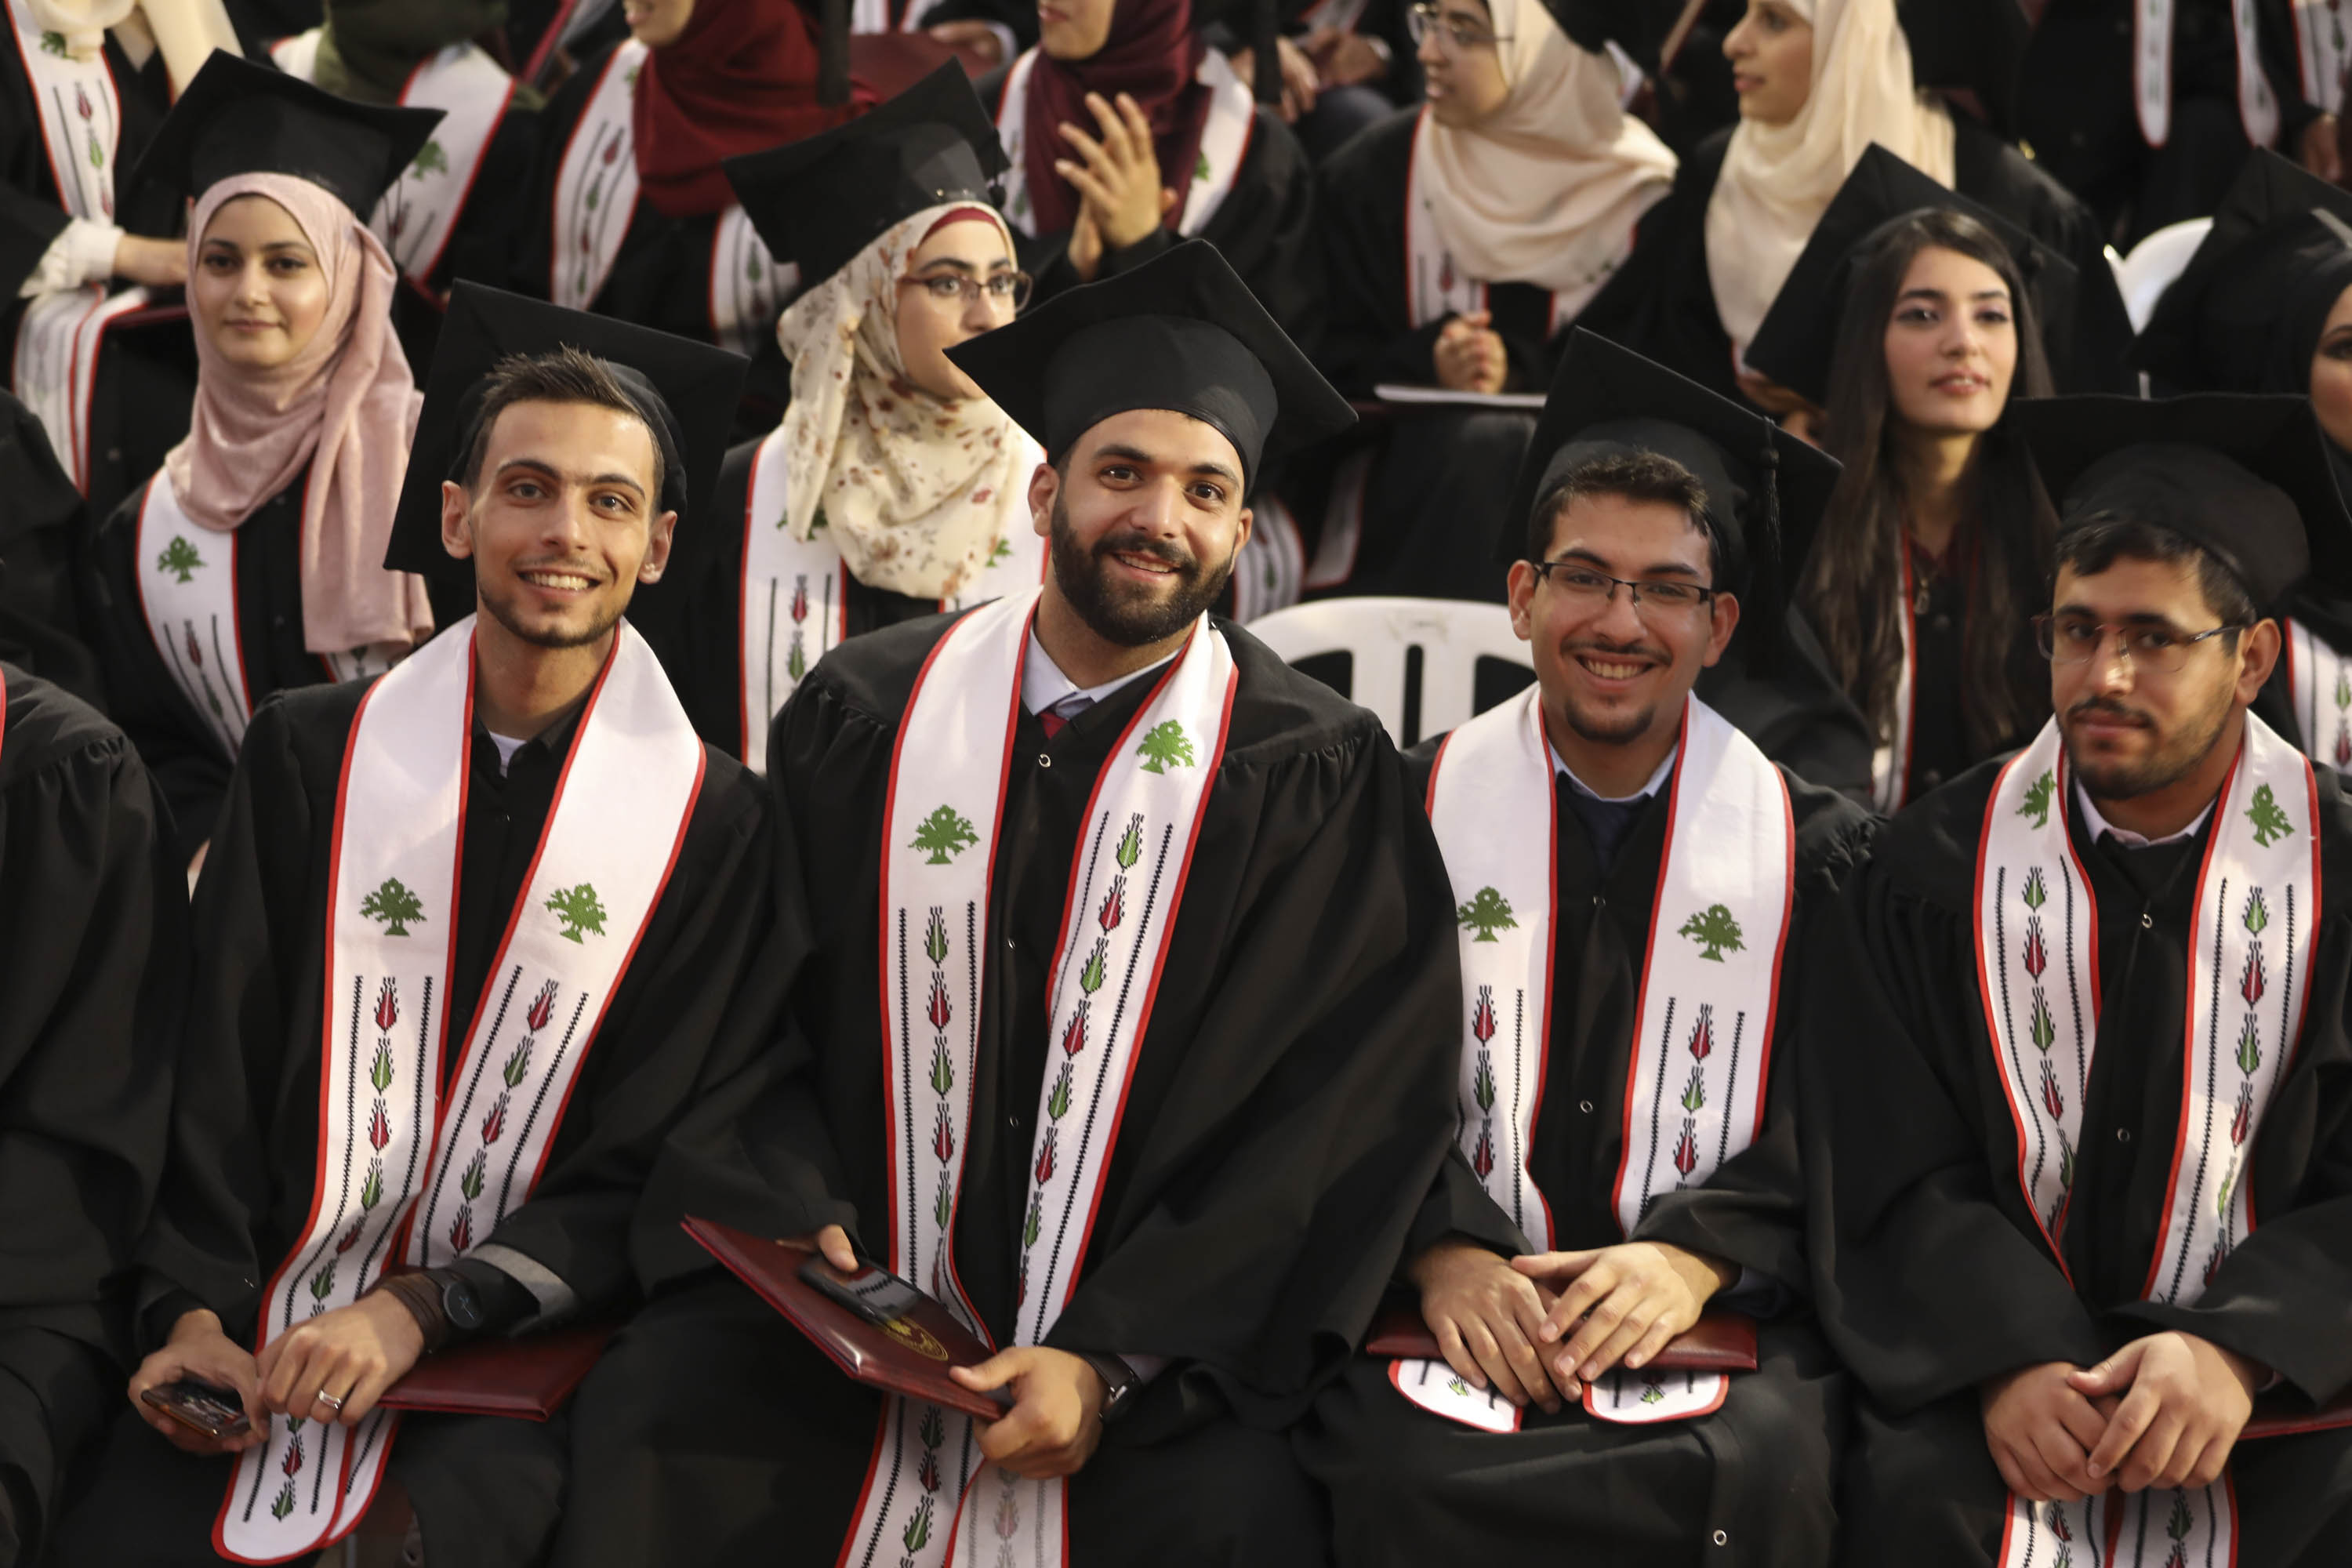 جامعة بيرزيت تتصدر الجامعات العربية والمحلية في معيار جودة التعليم وعشراوي تهنئ